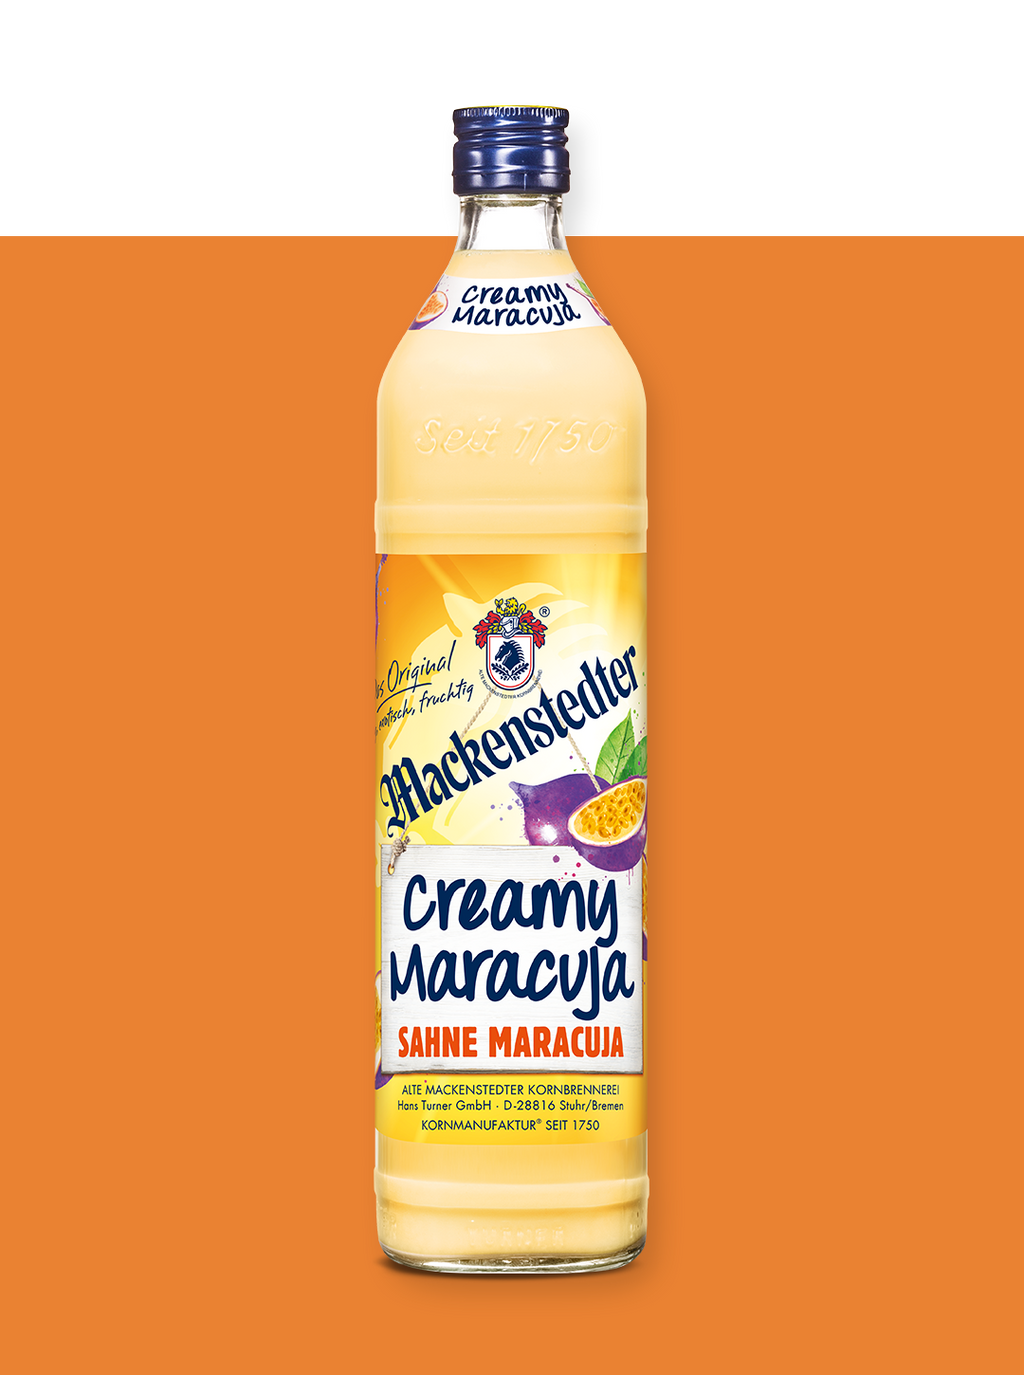 Das Foto einer Flasche Creamy Maracuja